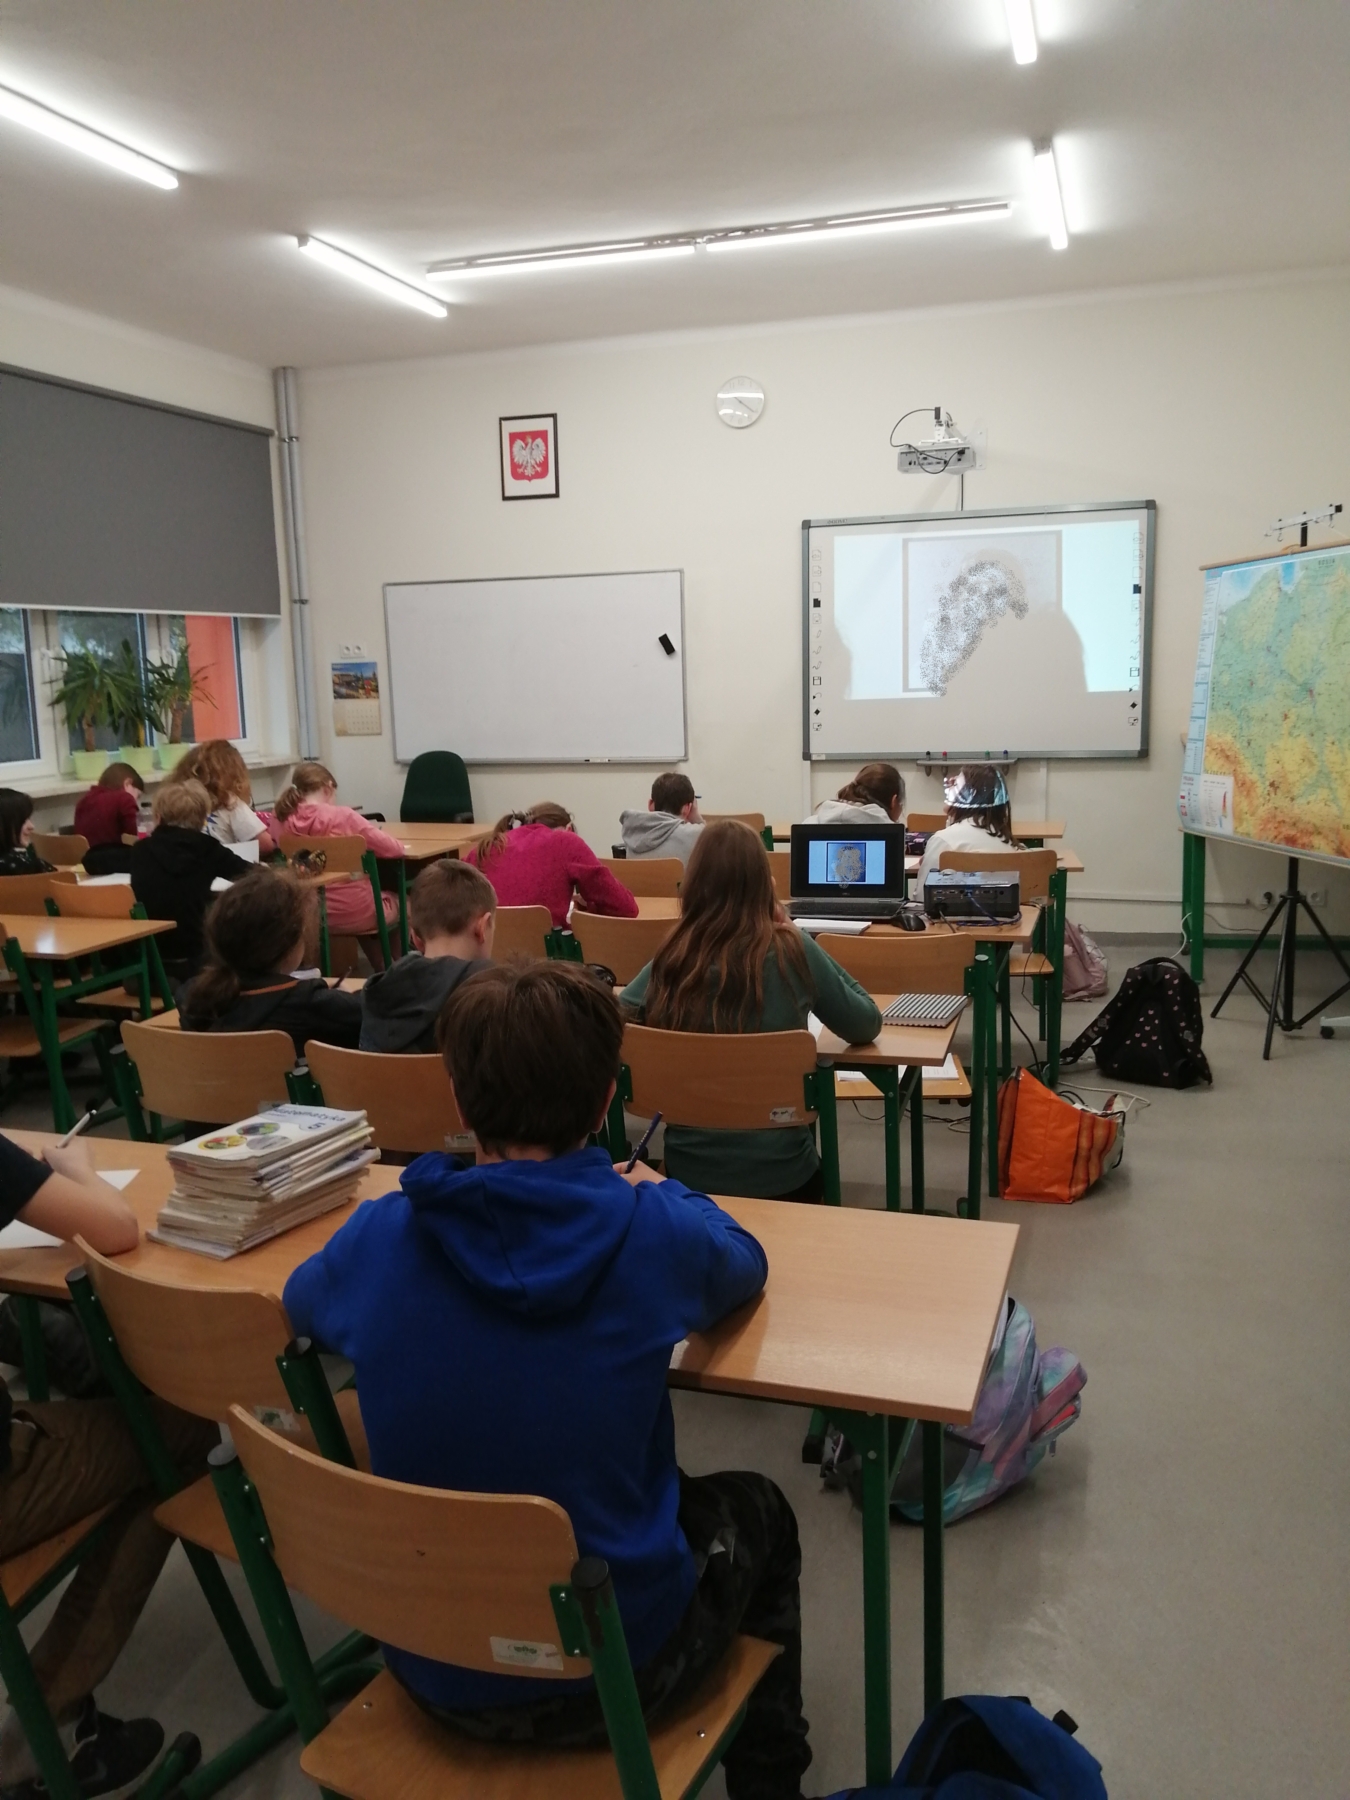 Uczniowie oglądają prezentację o Wisławie Szymborskiej